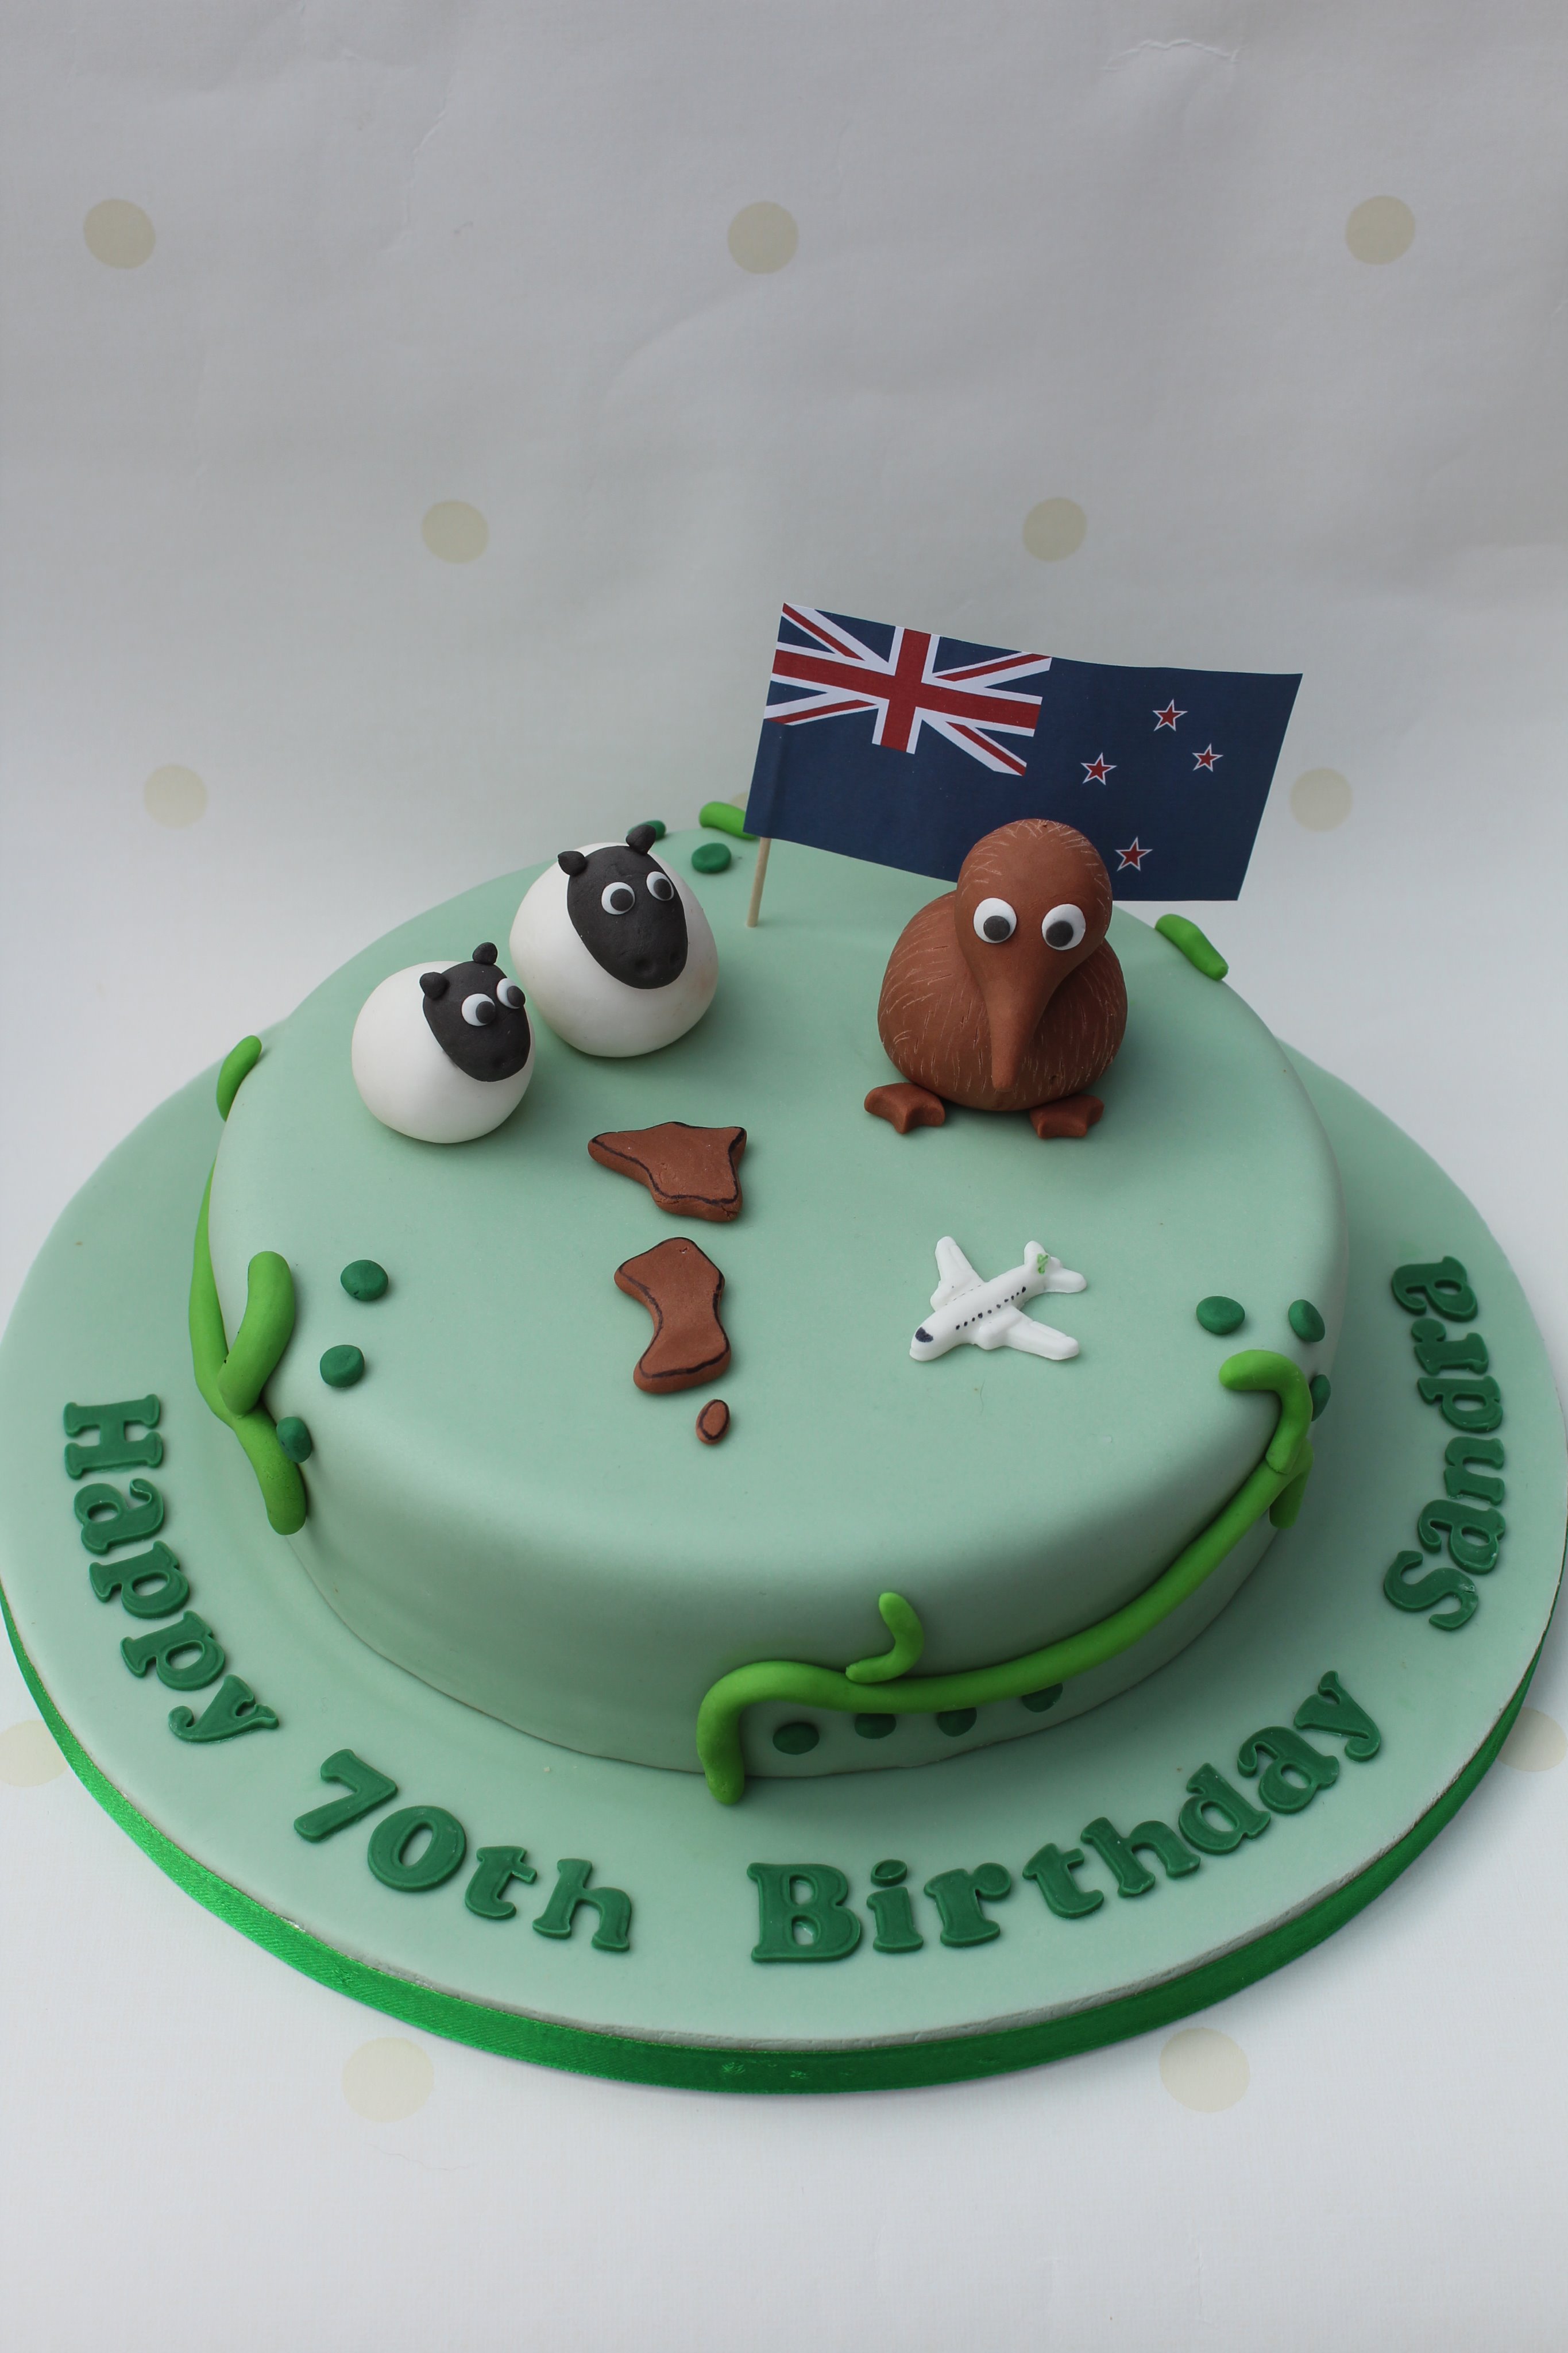 Striped Apron Bakery on X: "New Zealand themed birthday cake #birthdaycake # newzealand #kiwi #70thbirthday https://t.co/dfrcCZ6wC4" / X